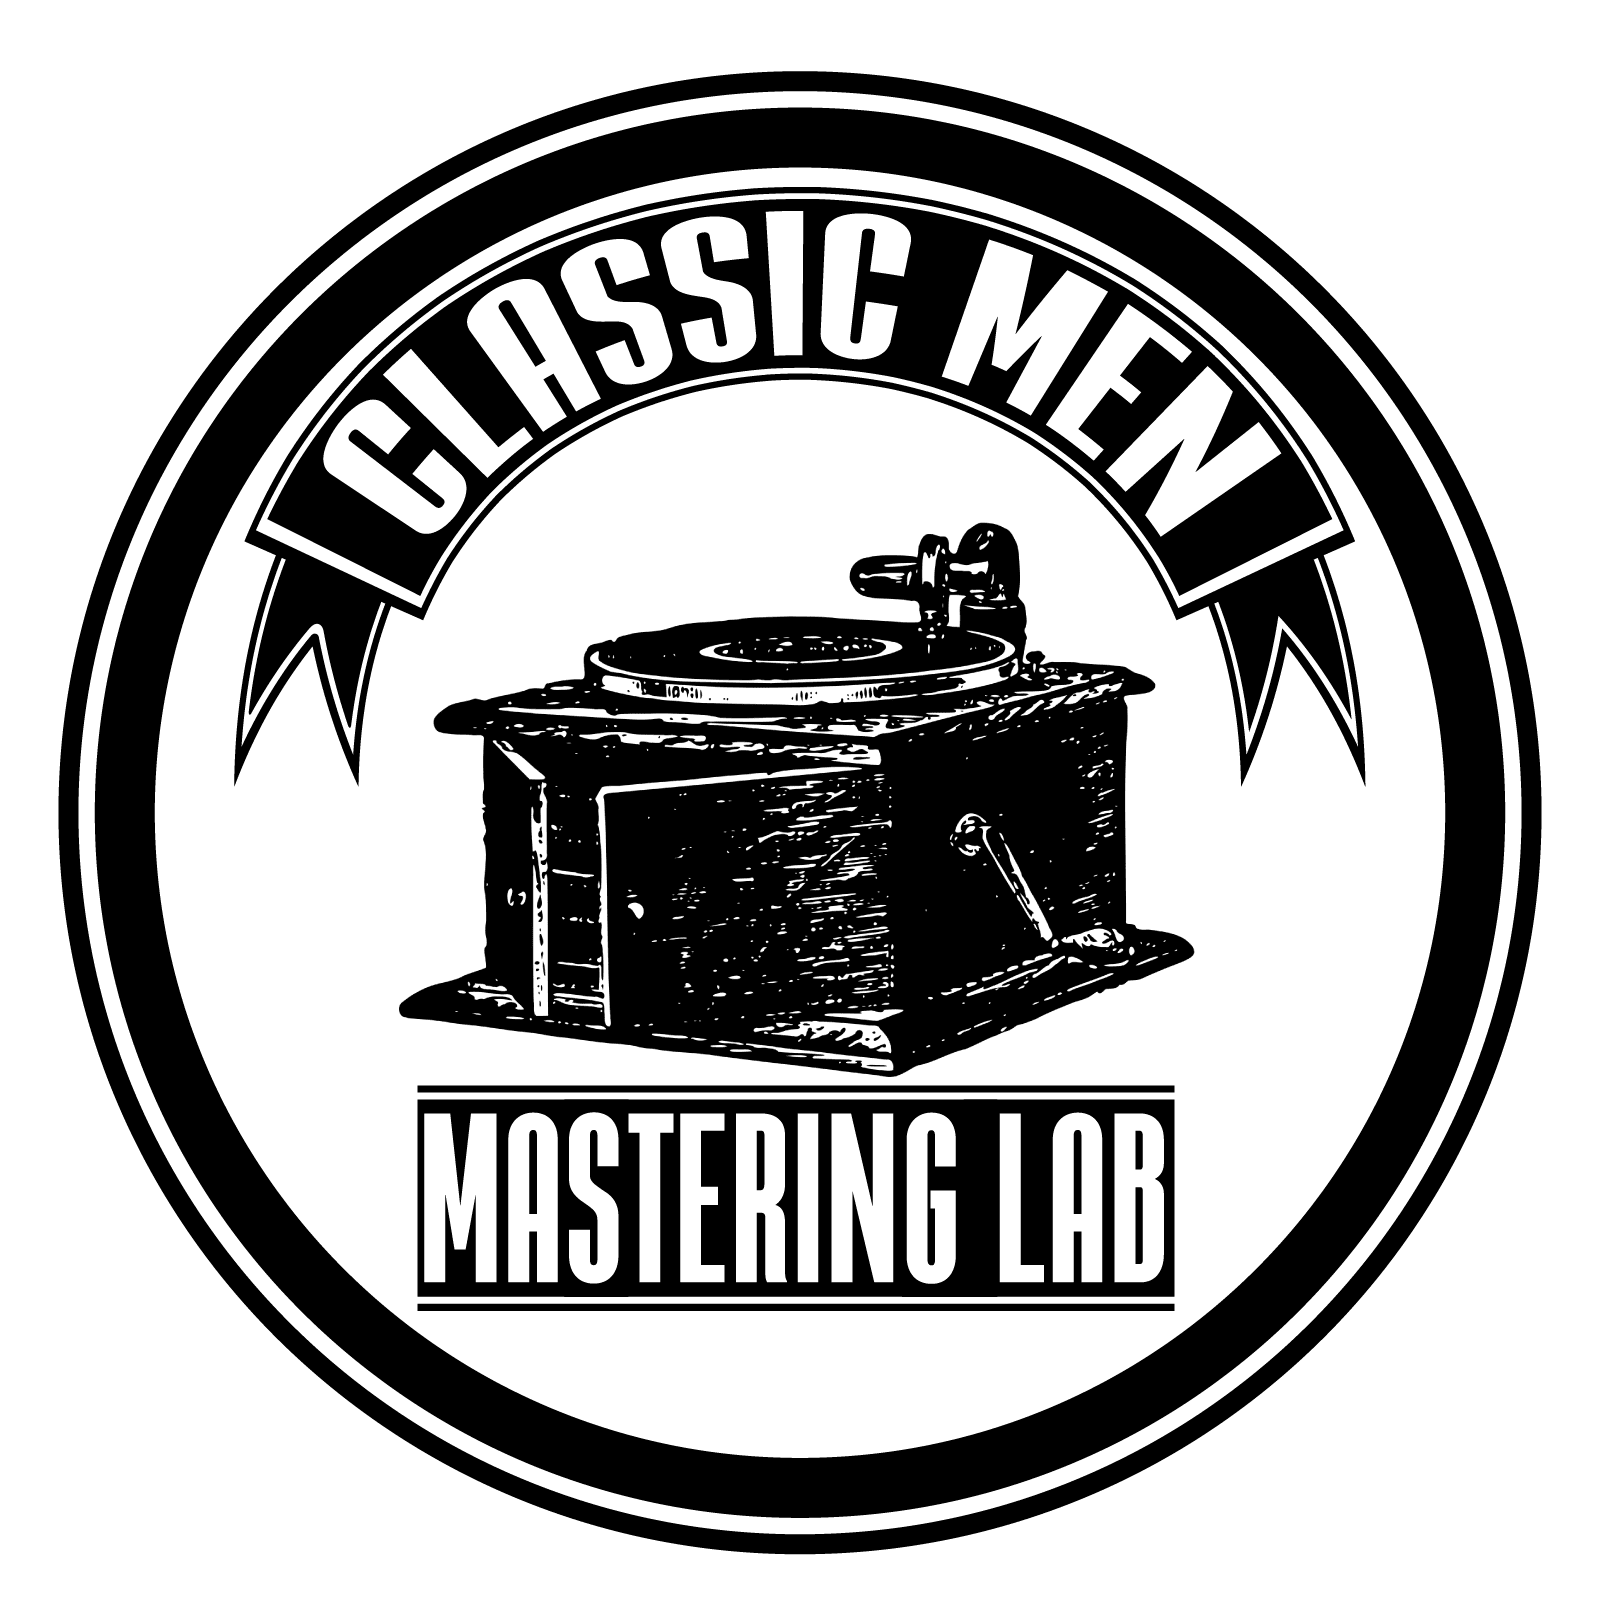 Classic Men Mastering Lab